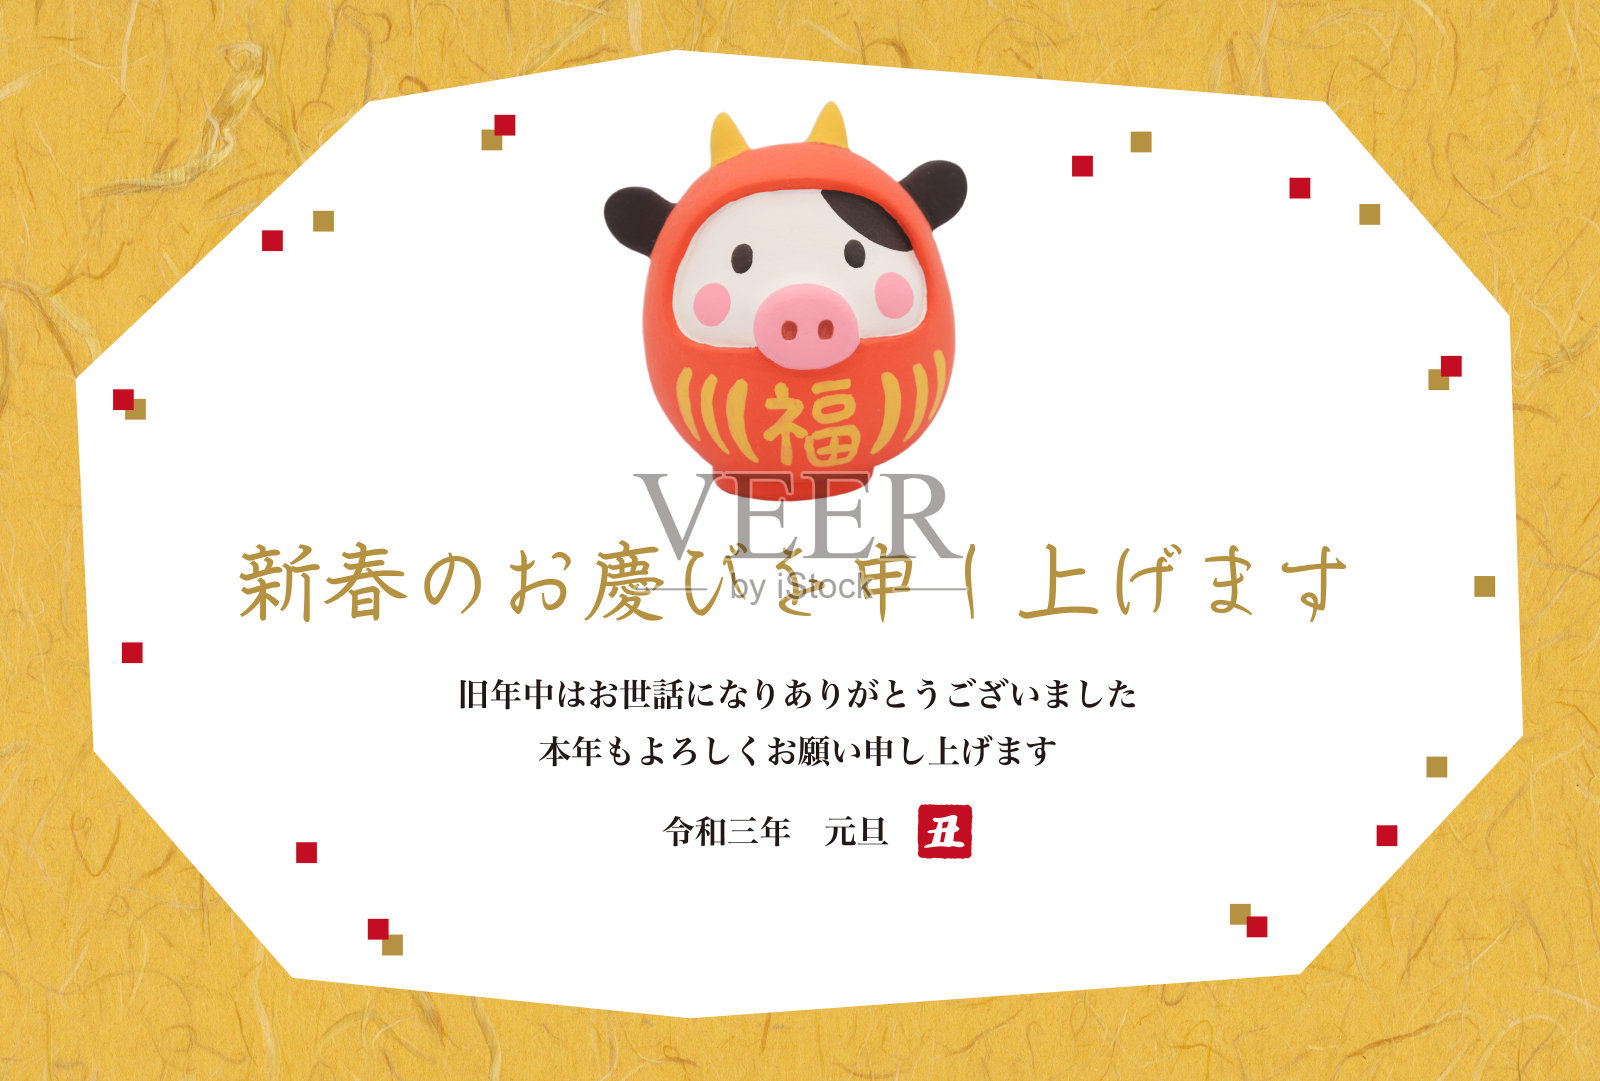 新年贺卡上有日本传统人物泥塑“达摩装扮成牛”。照片摄影图片